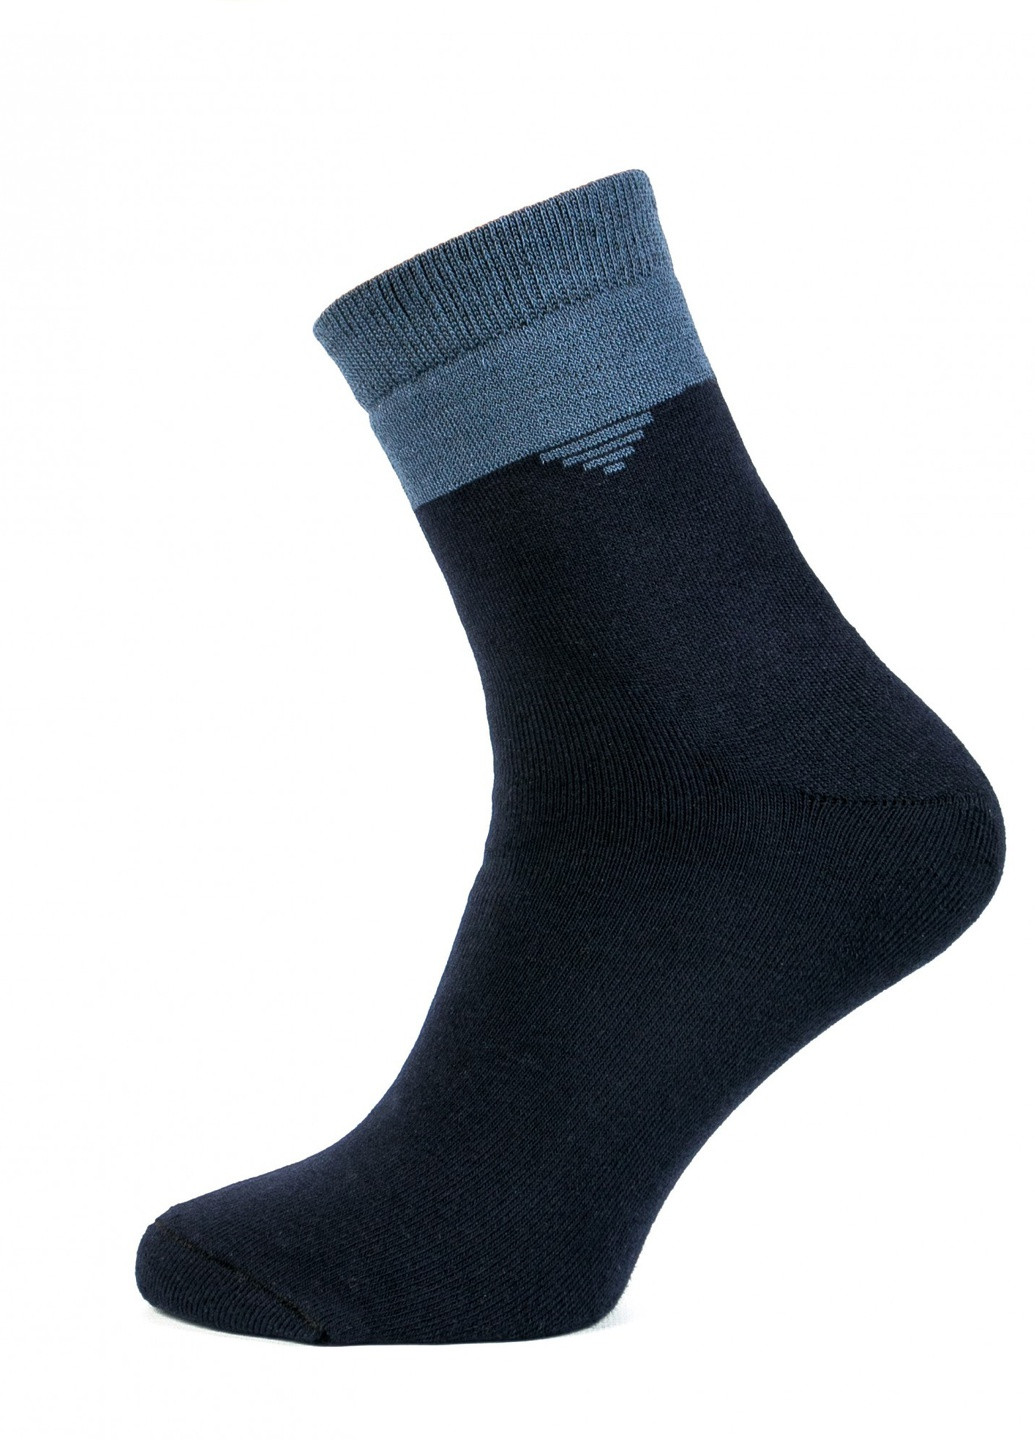 Шкарпетки чоловічі ТМ "Нова пара" плюш 443 НОВА ПАРА середня висота (257108313)